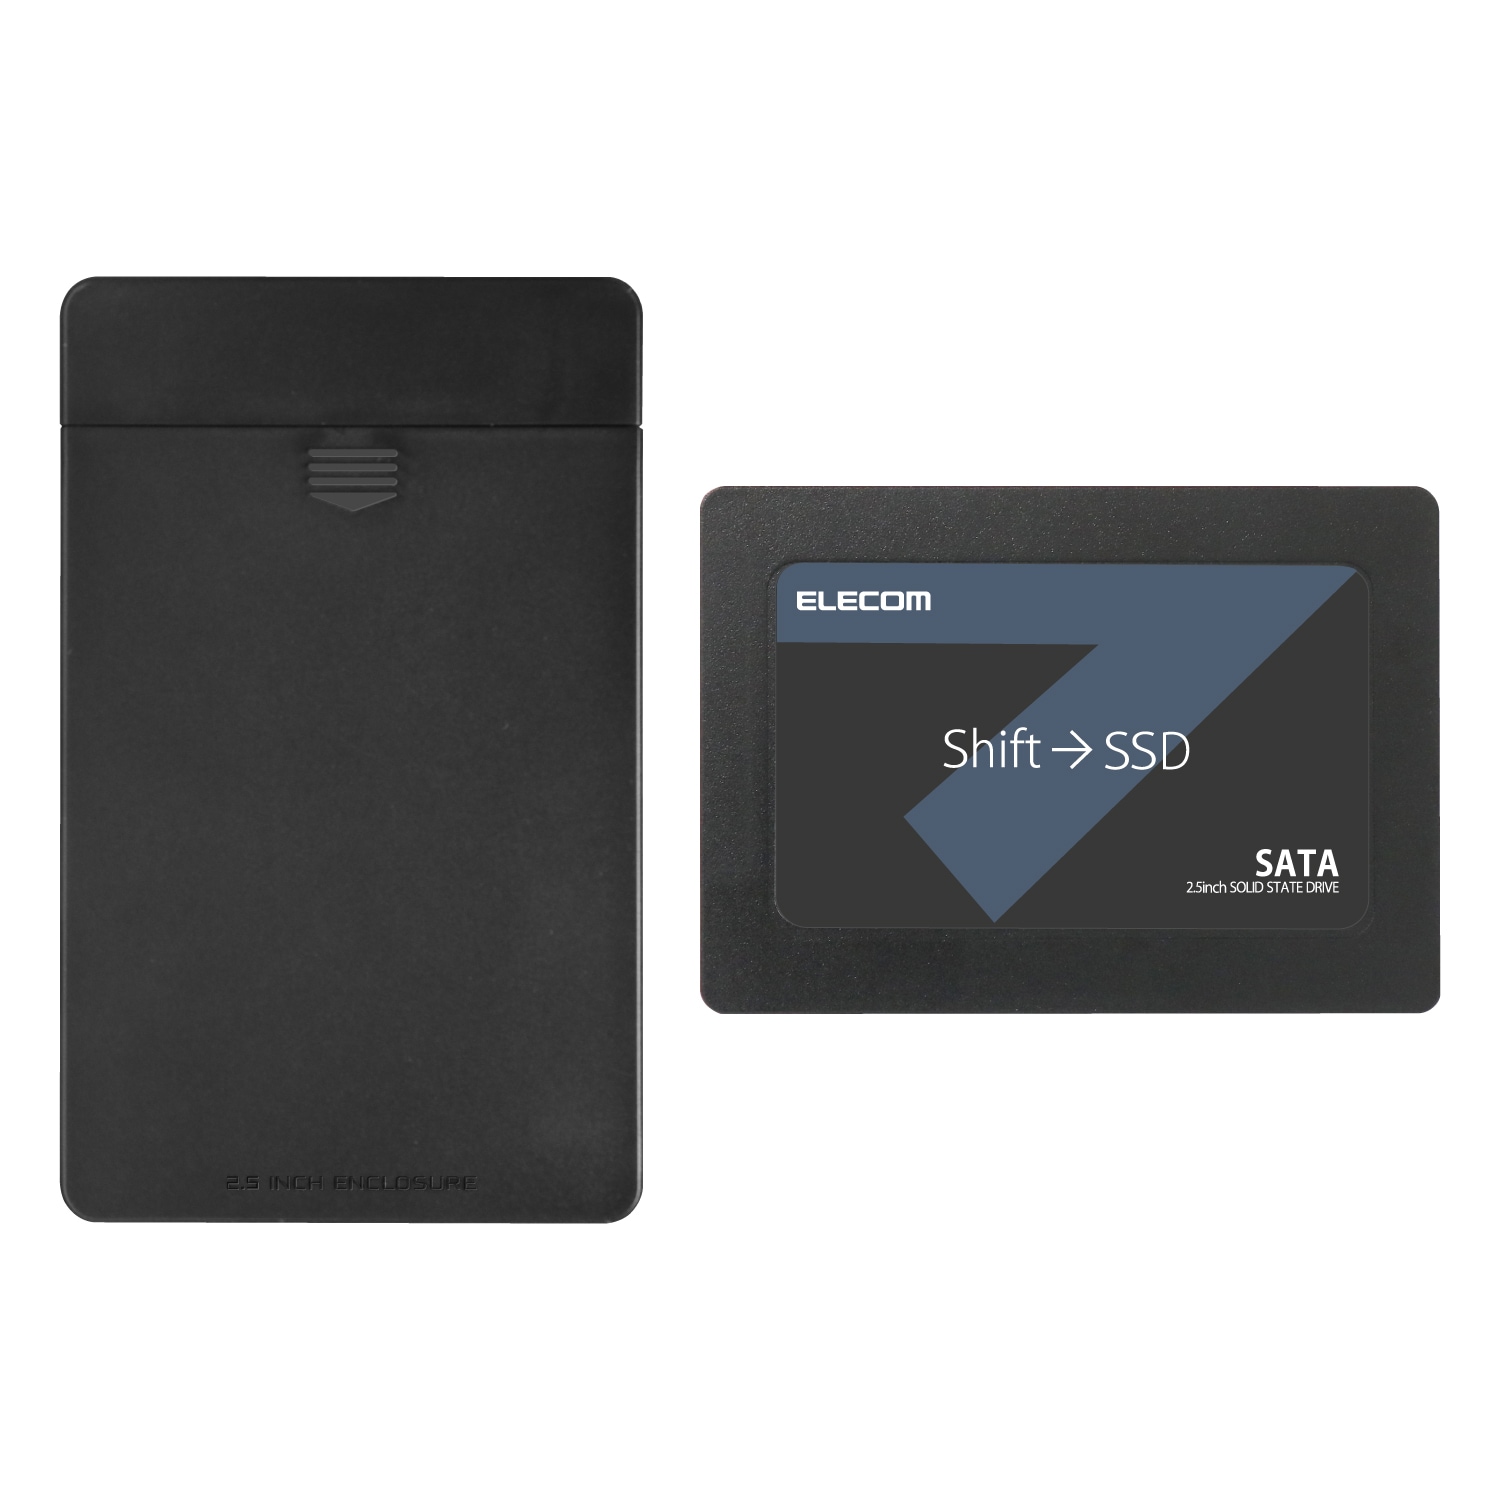 内蔵2.5インチ SSD 960GB 耐衝撃 USB3.1 Gen1 ケーブル付属